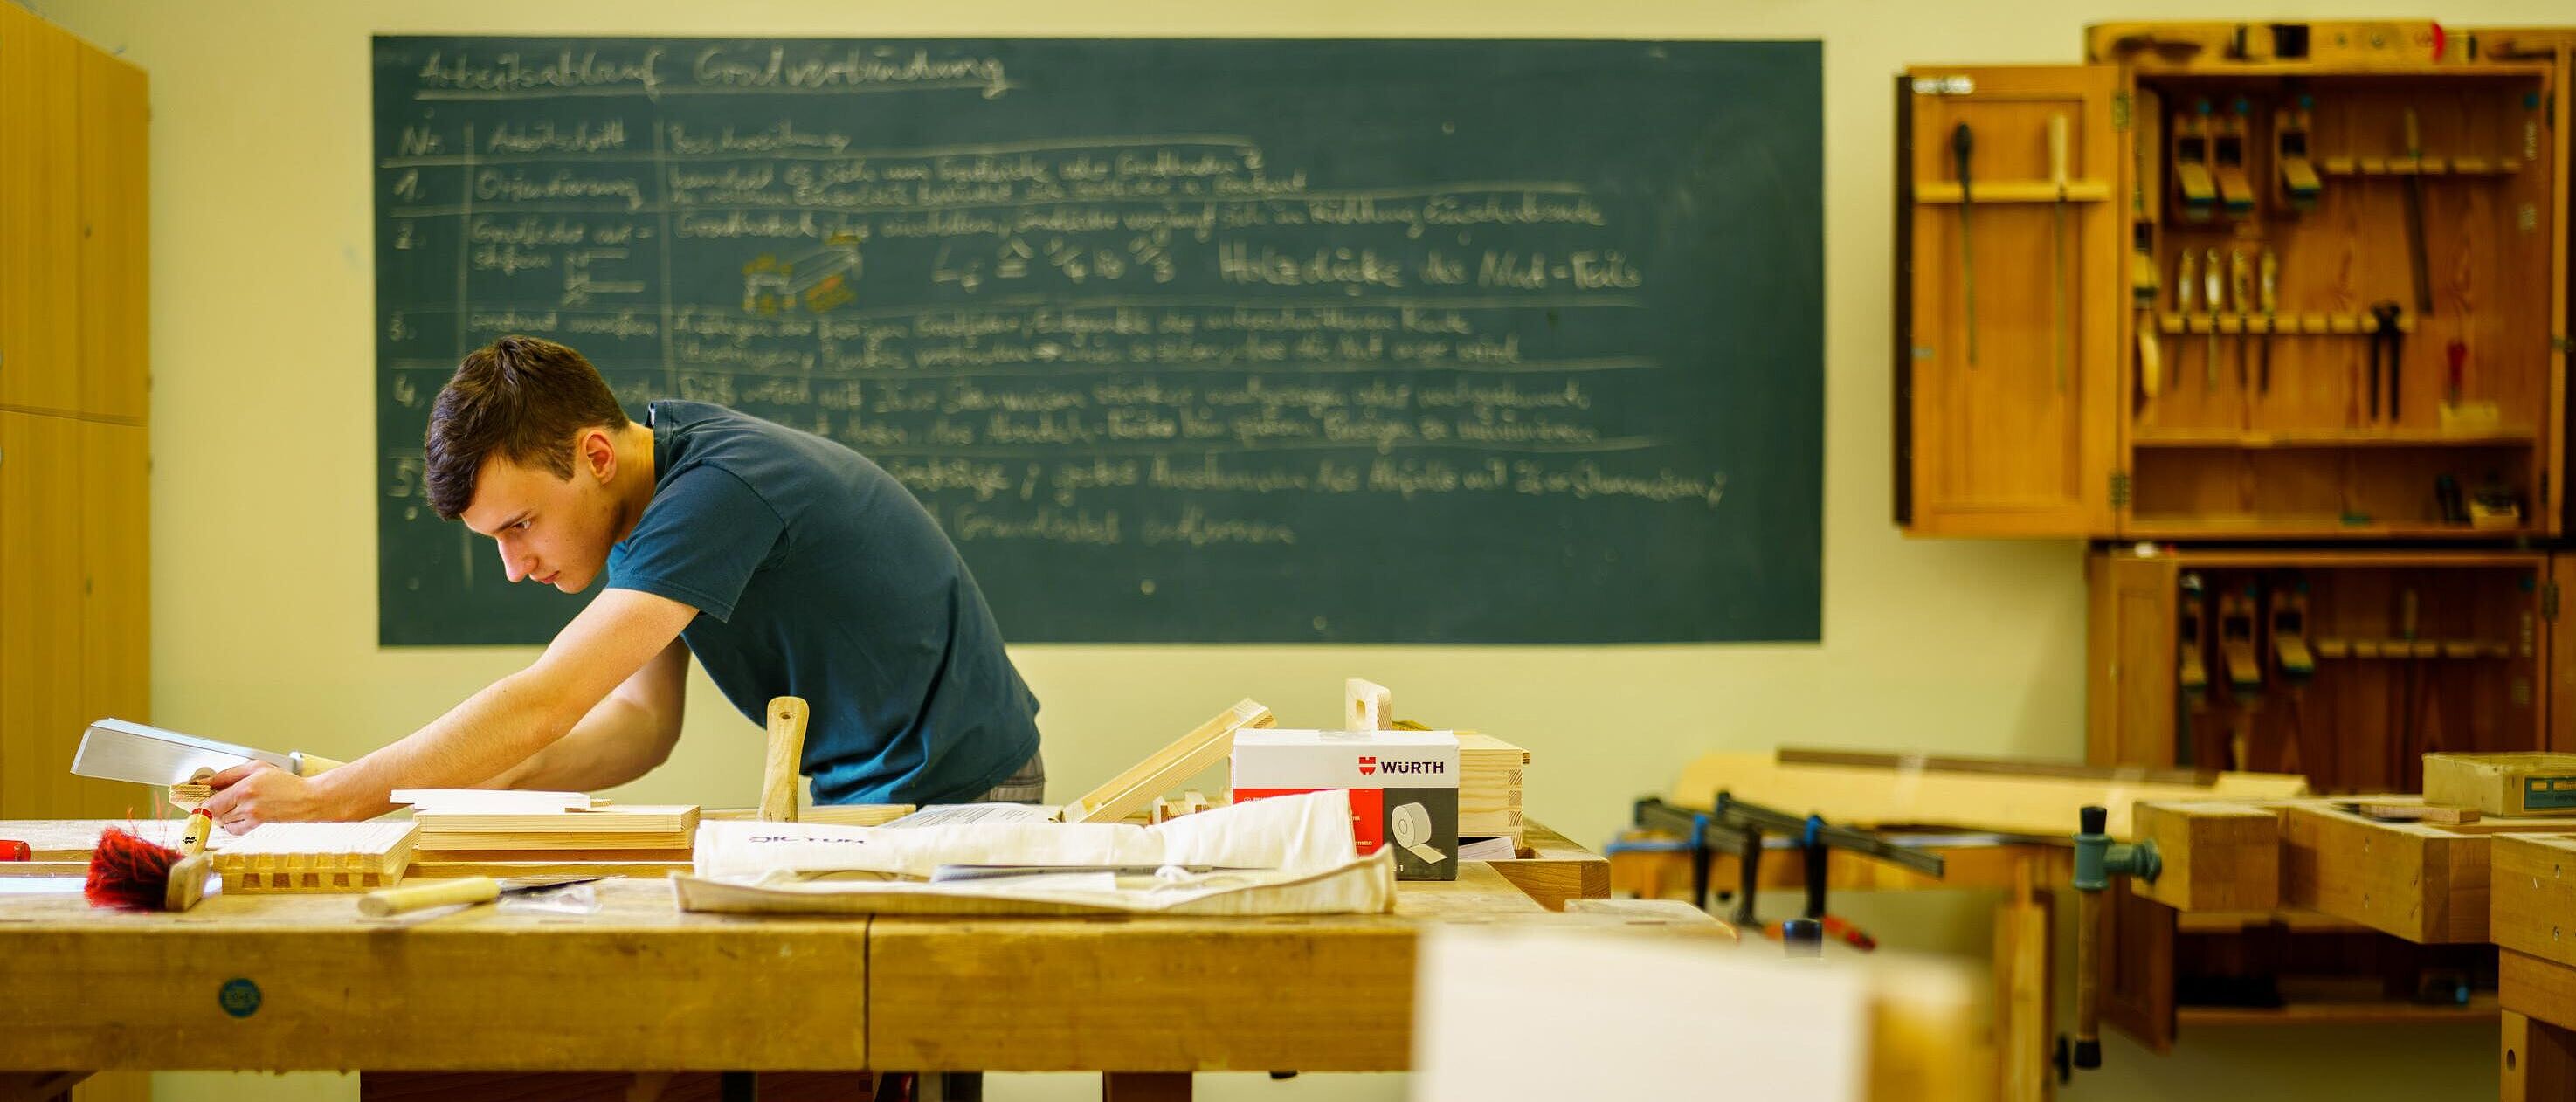 Eine Person arbeitet schleifend und prüfend an einer Werkbank in einem Tischlerraum, im Hintergrund eine voll geschriebene Unterrichtstafel.